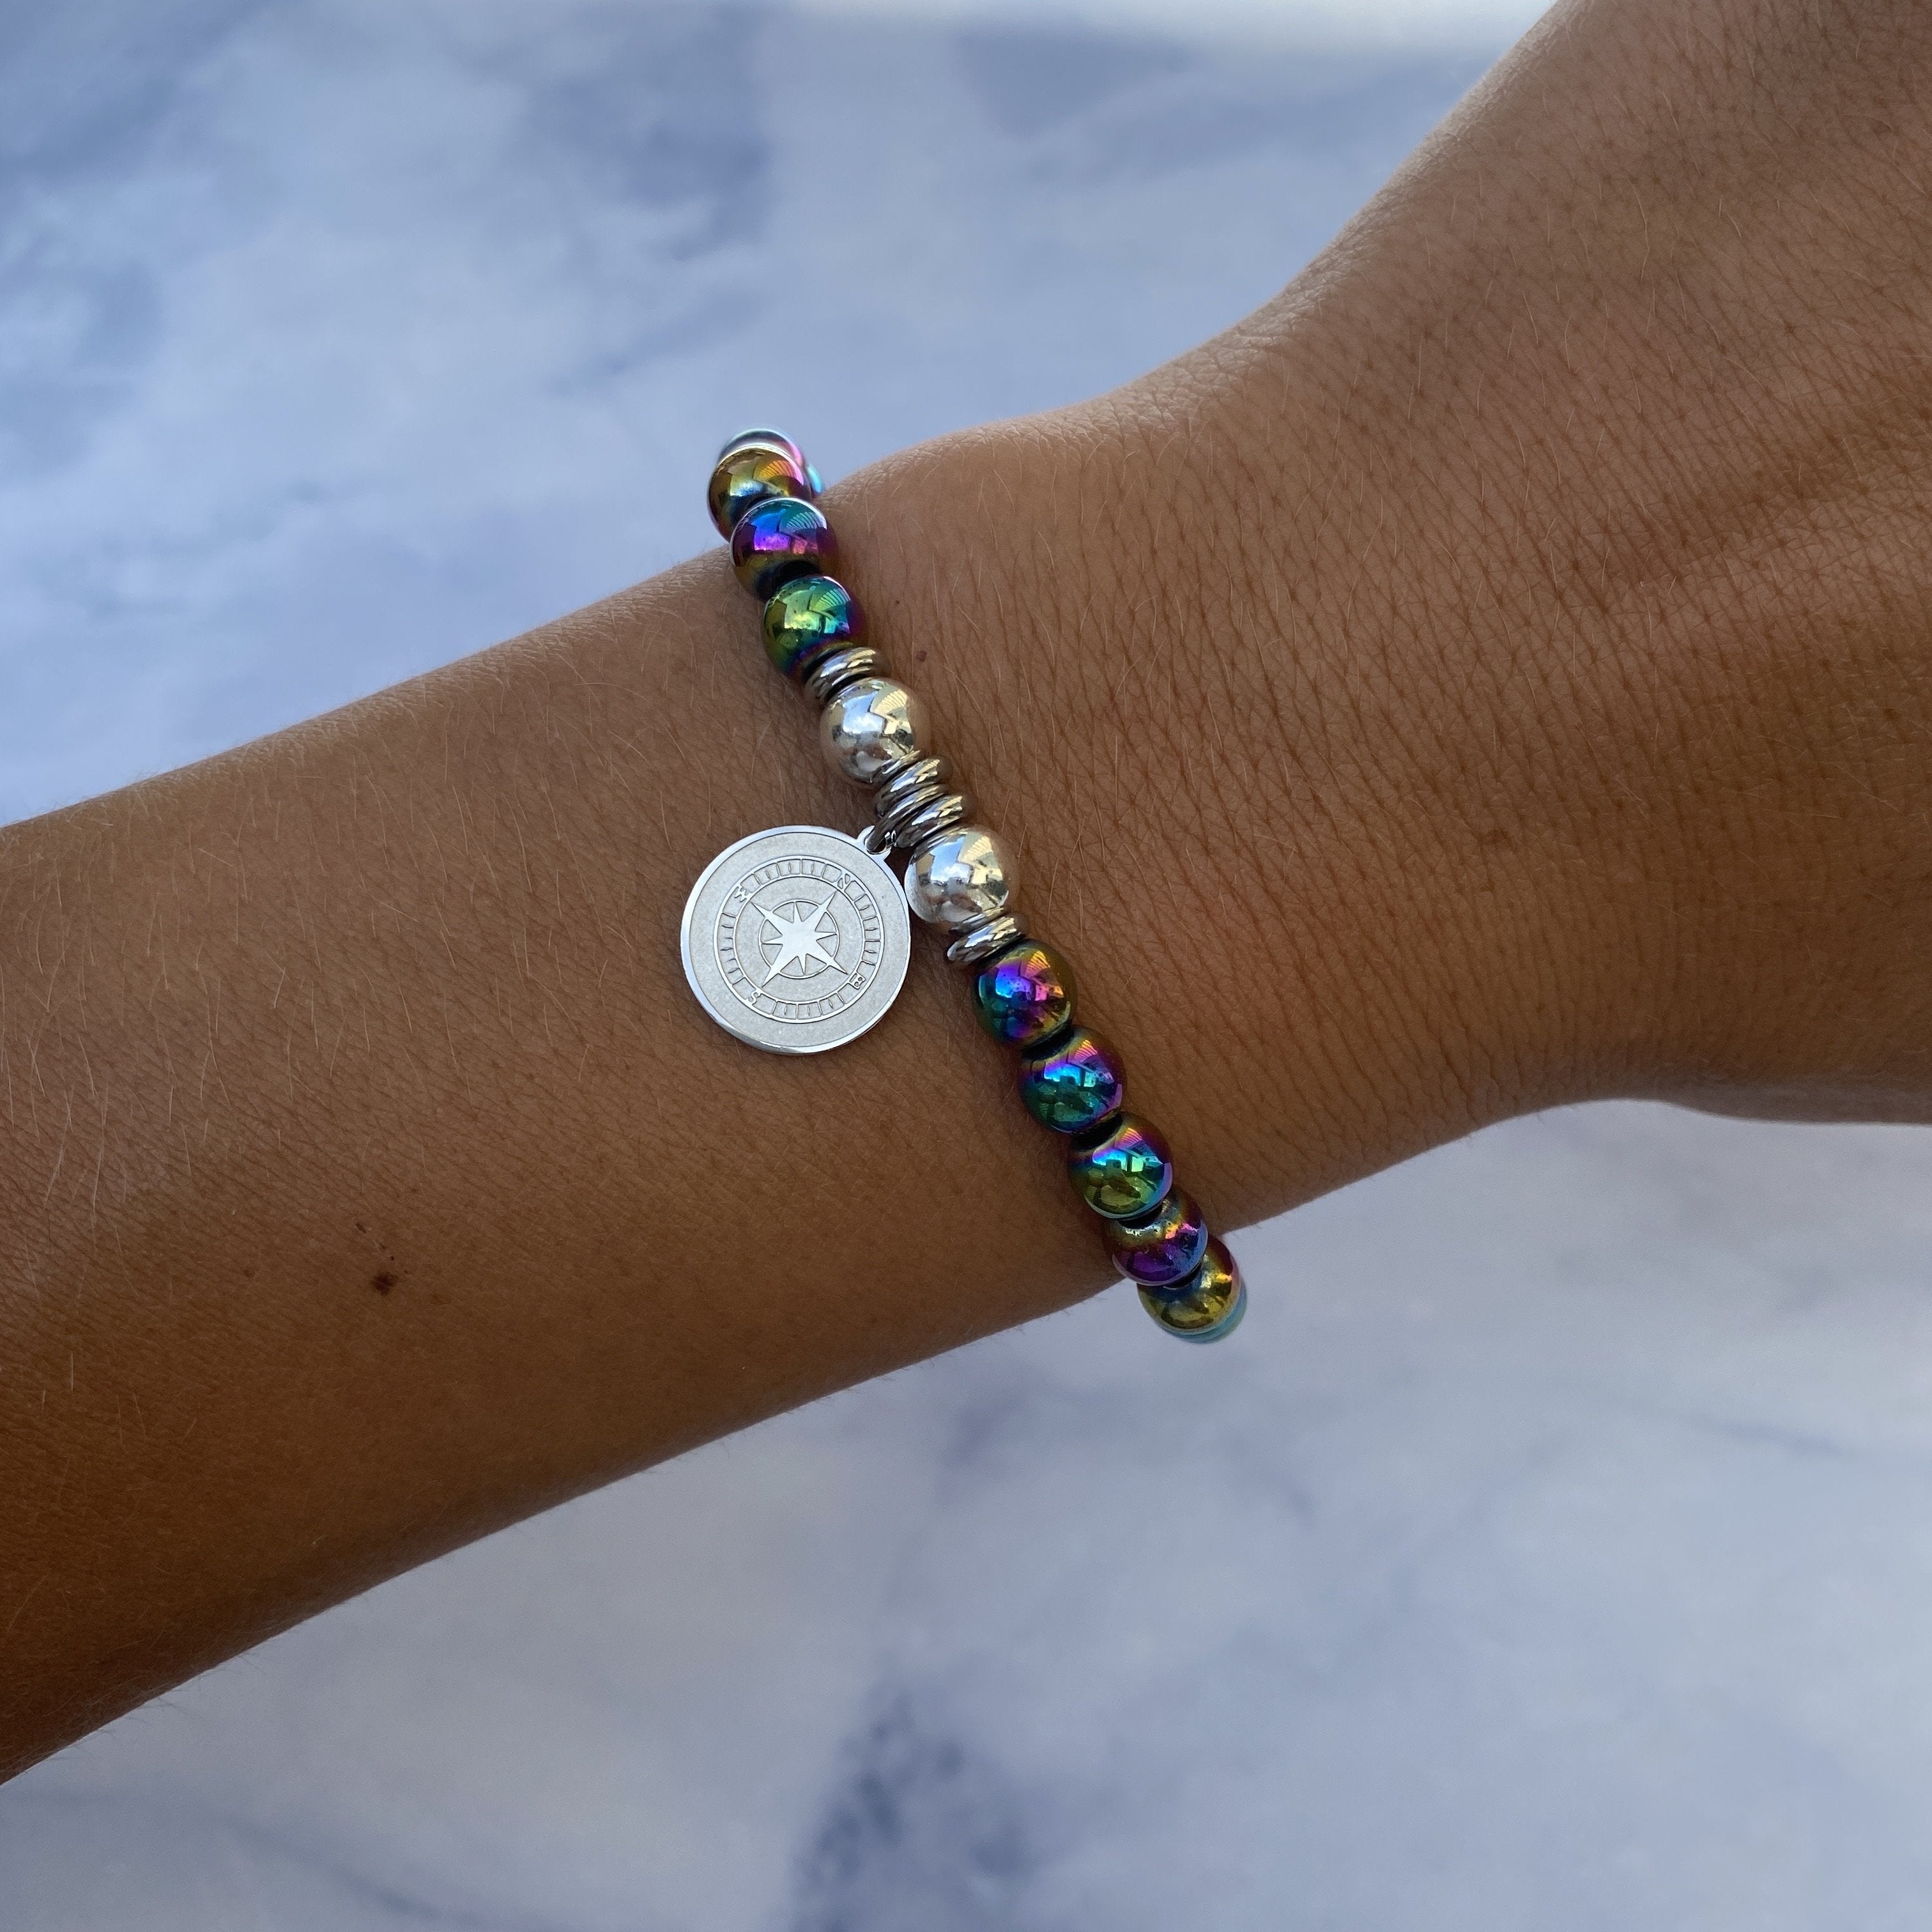 Buy Rainbow Hematite Bracelet Online in India - Etsy